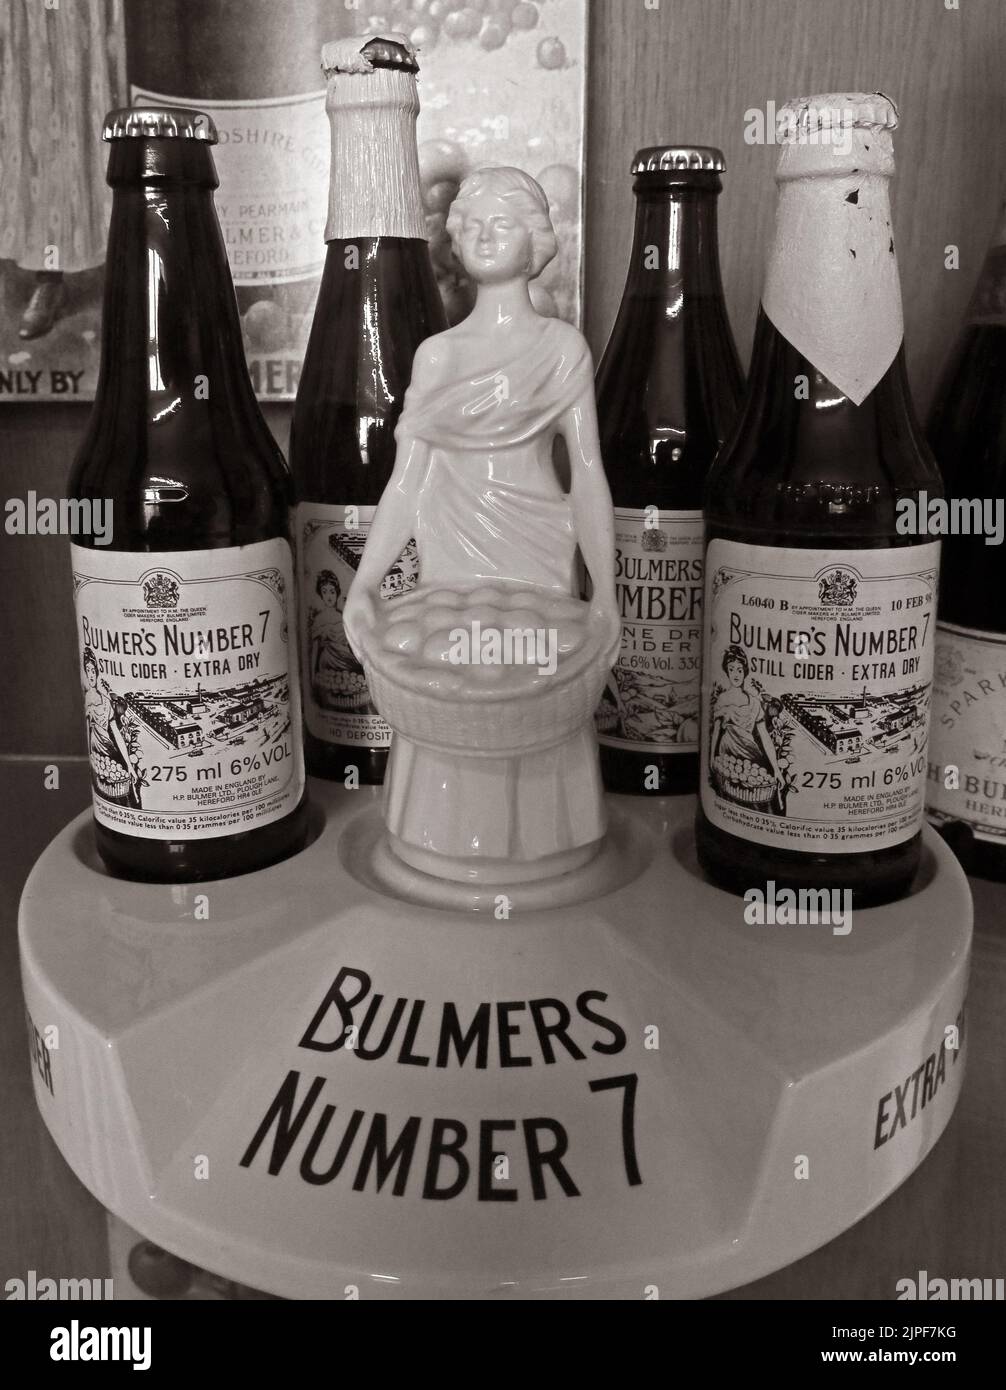 Bulmers Numéro 7 exposition de cidre, base en céramique, femme et bouteille de cidre extra sec historique Banque D'Images